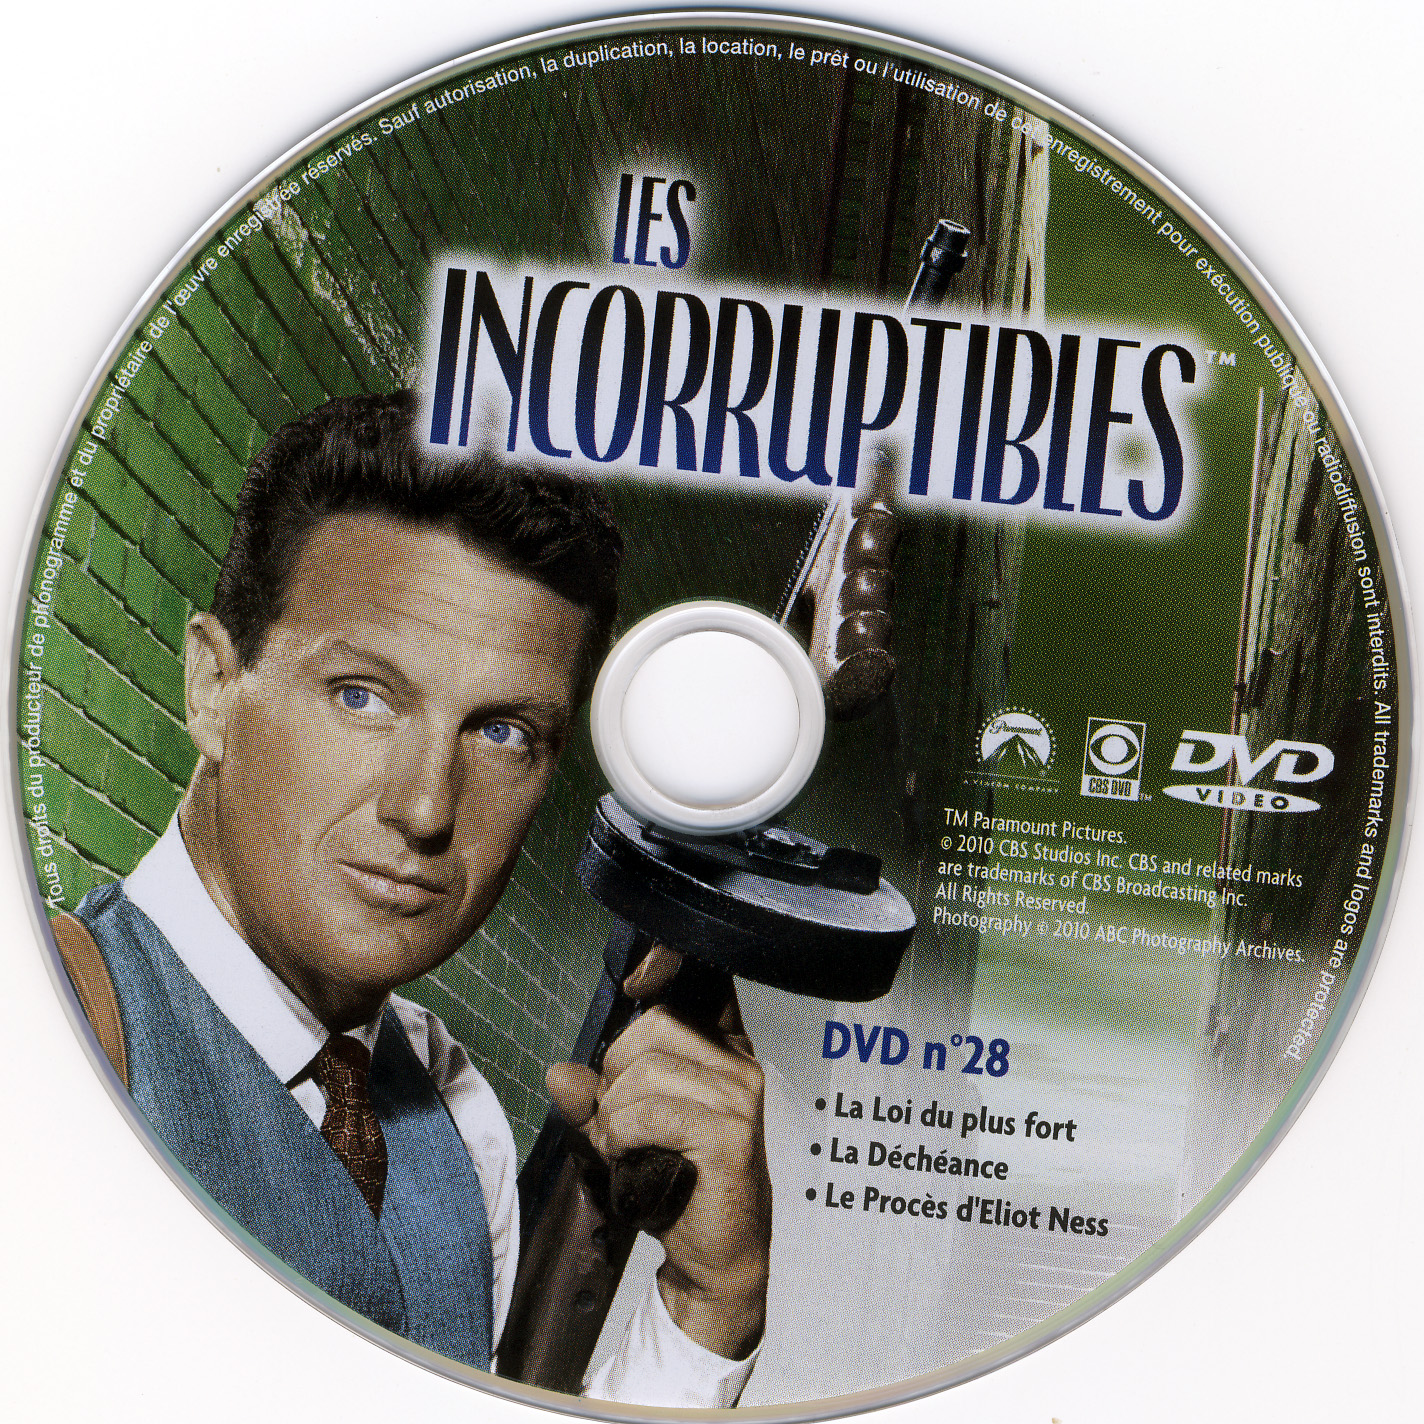 Les incorruptibles intgrale DVD 28